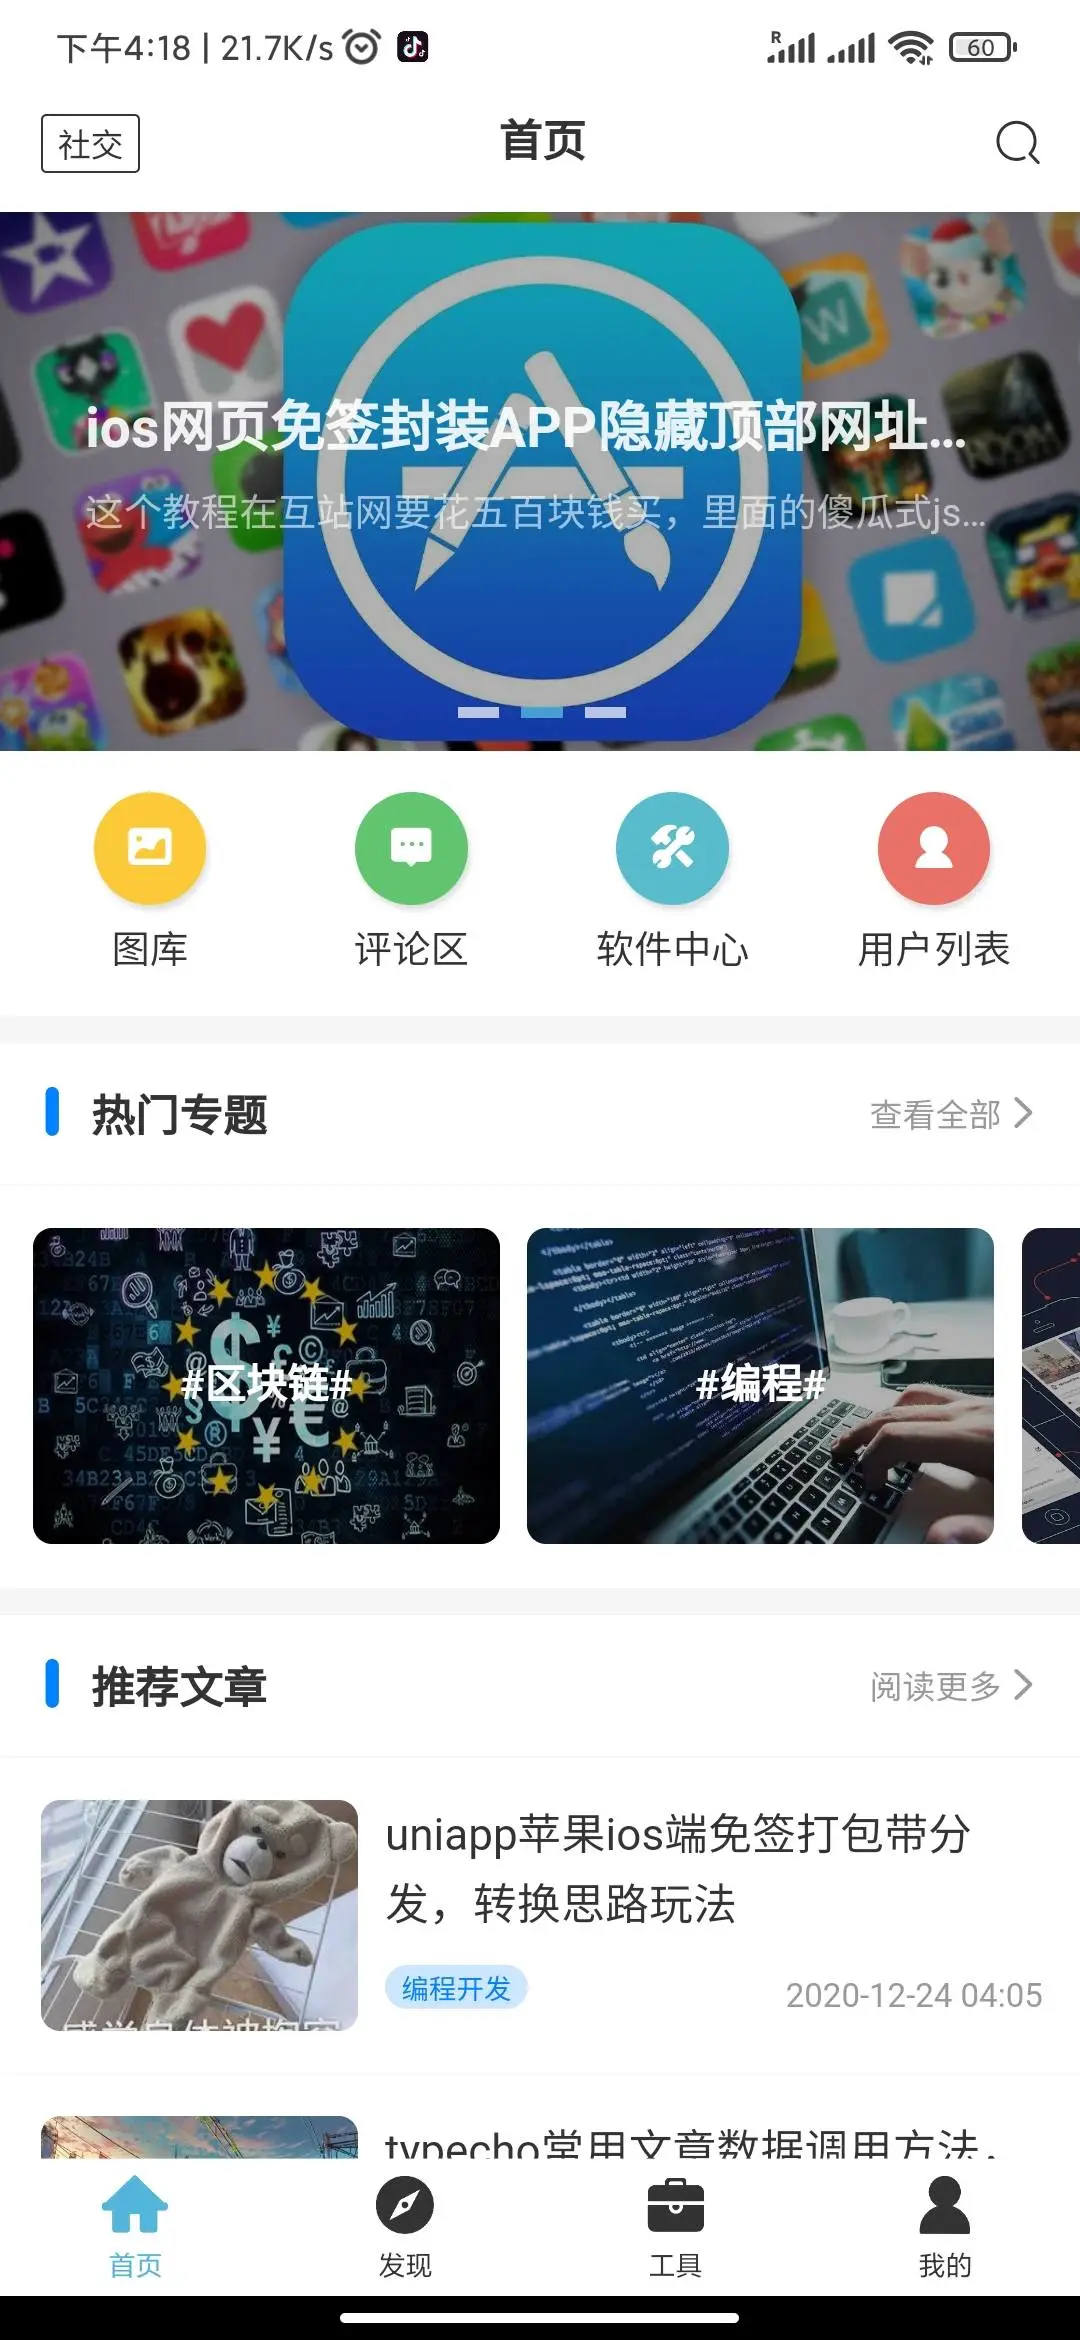 多(duō)端知識付費(fèi)app